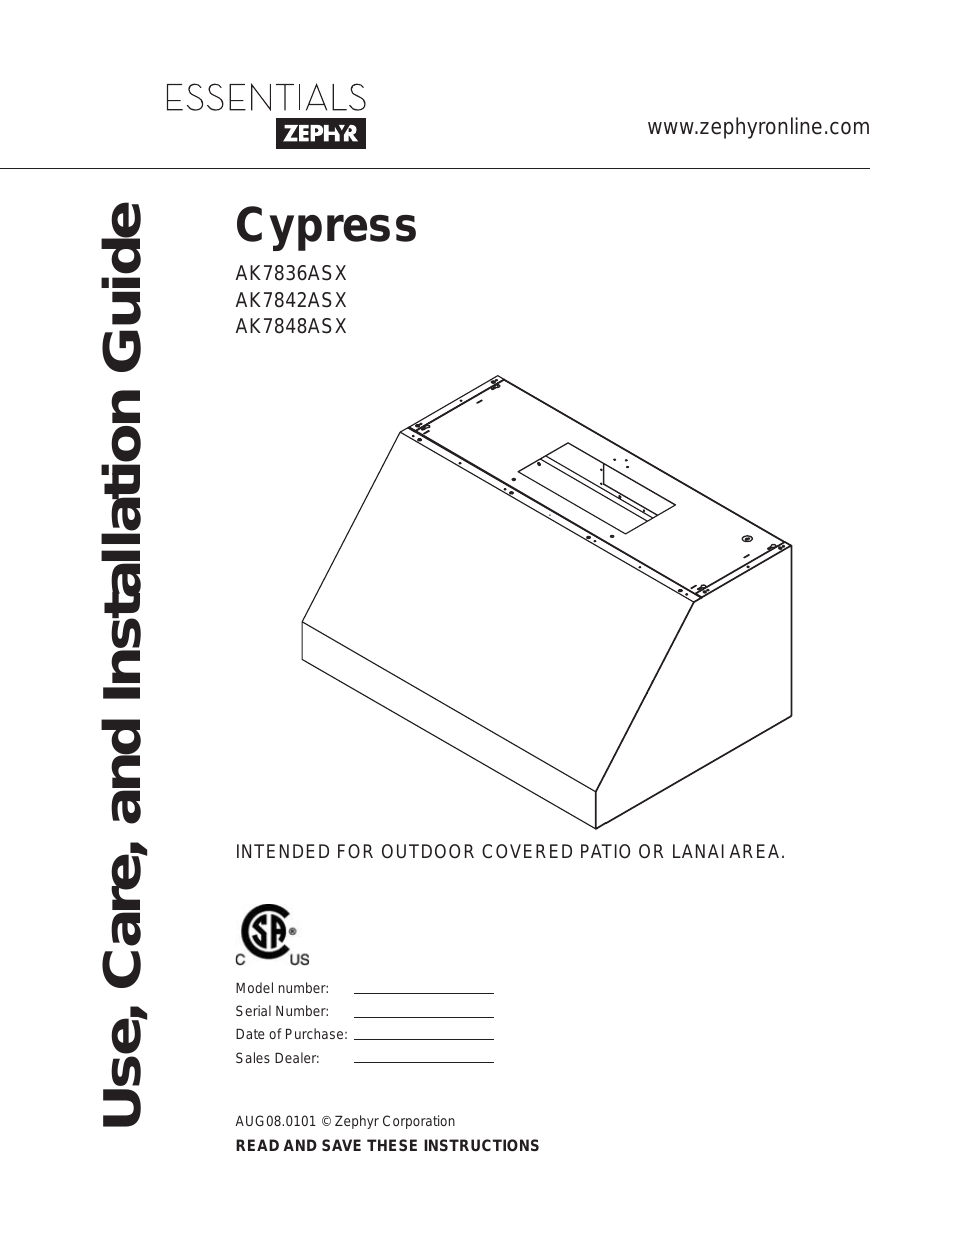 Cypress AK7842ASX